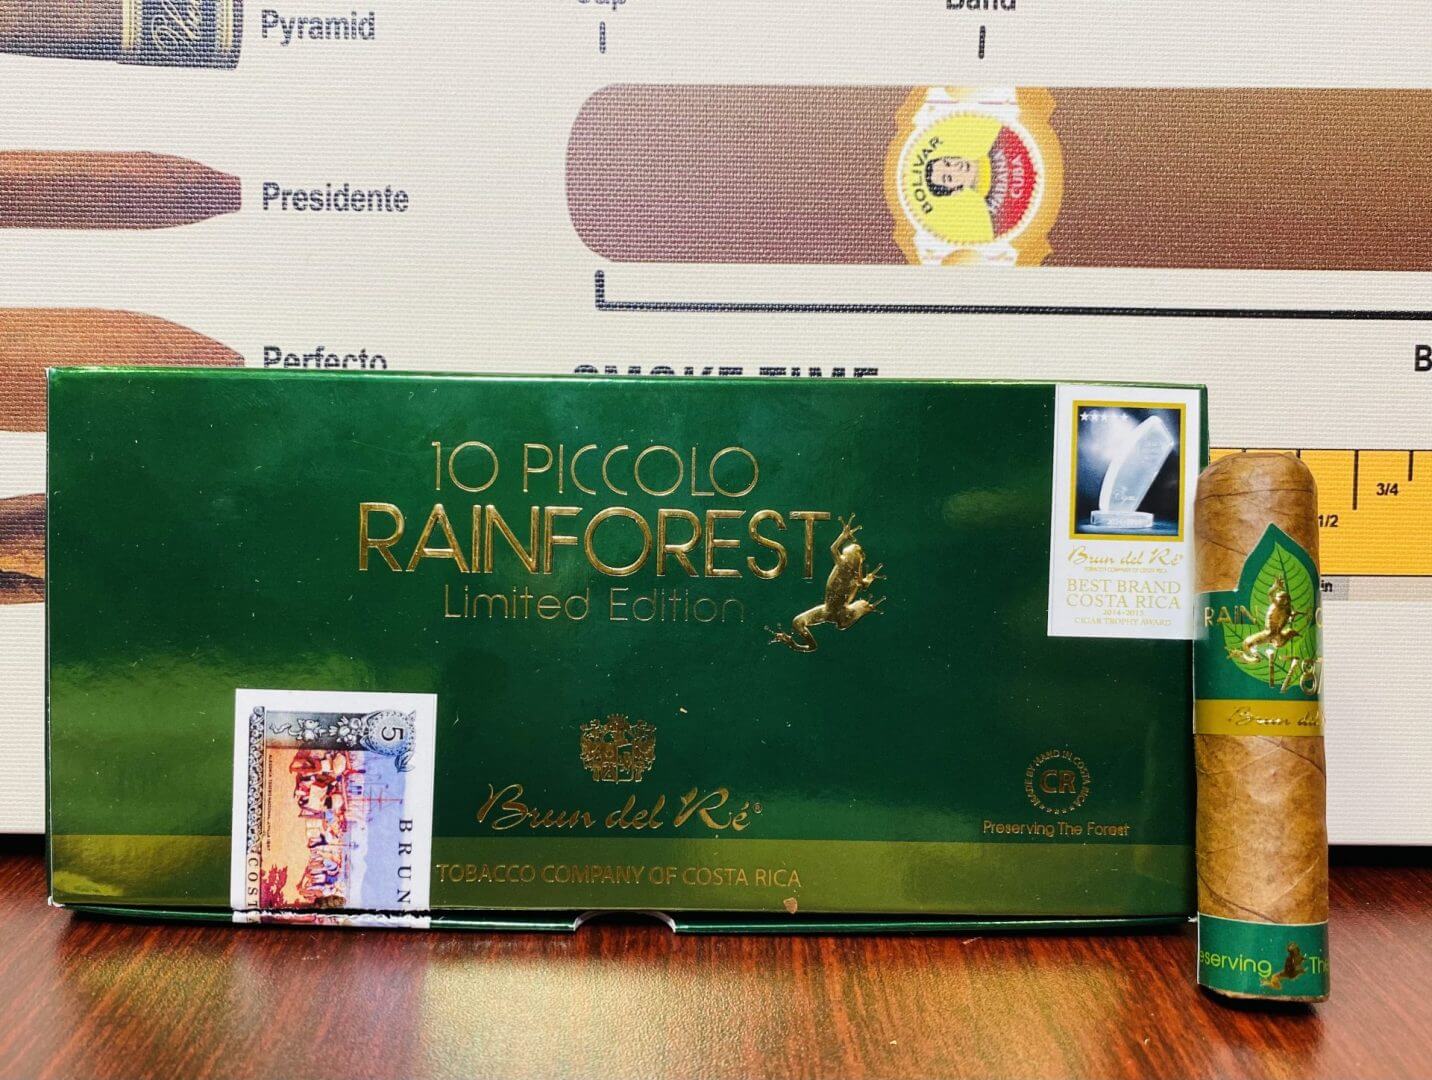 1787 Rainforest Piccolo Ltd. Edition